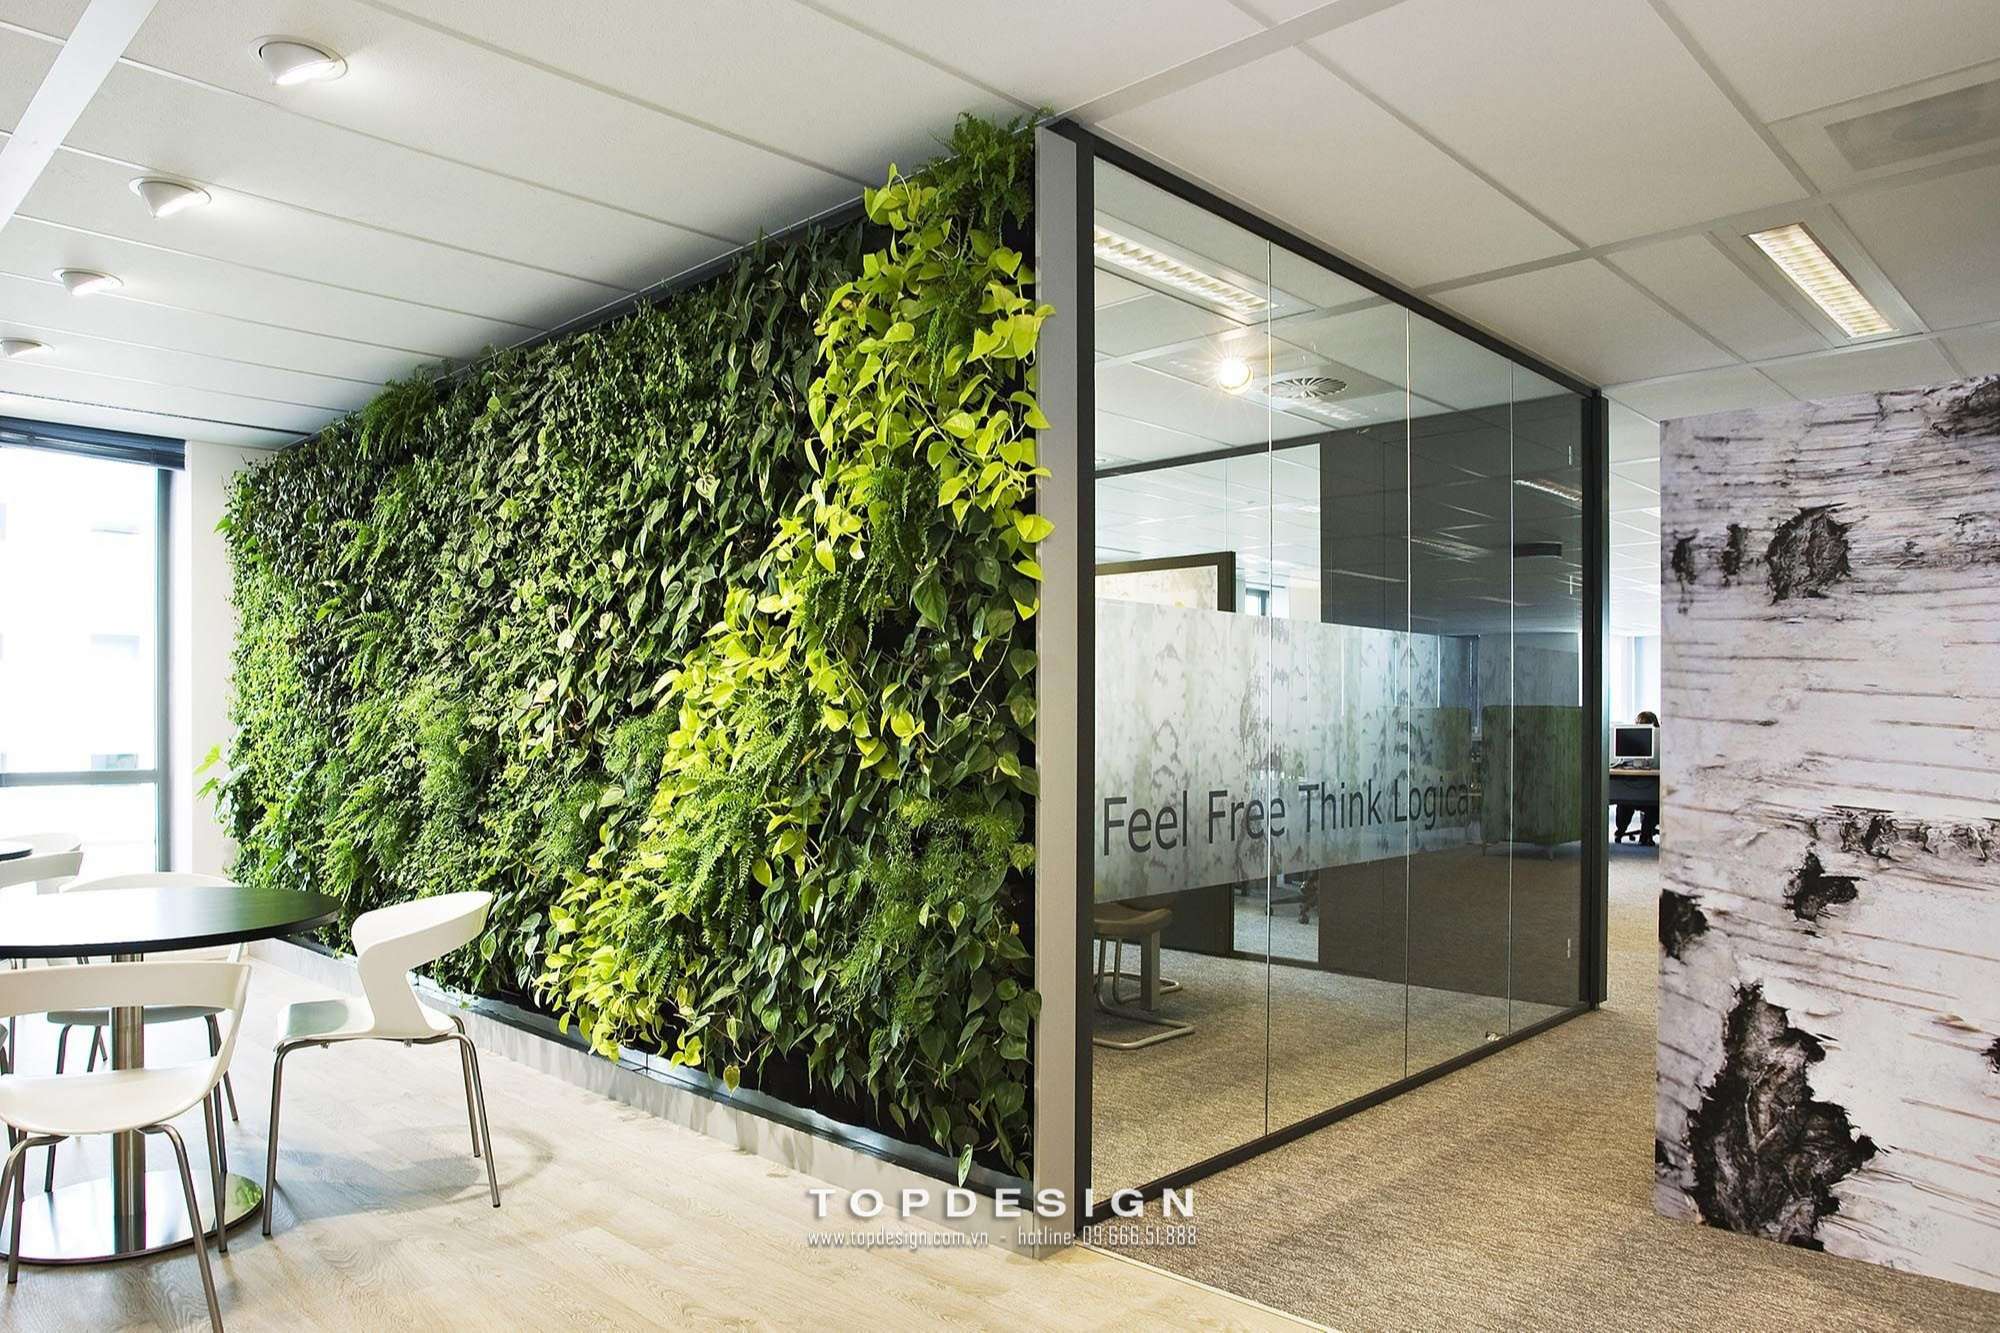 6.Mẫu thiết kế văn phòng đẹp, trang trí cây xanh_TOPDESIGN